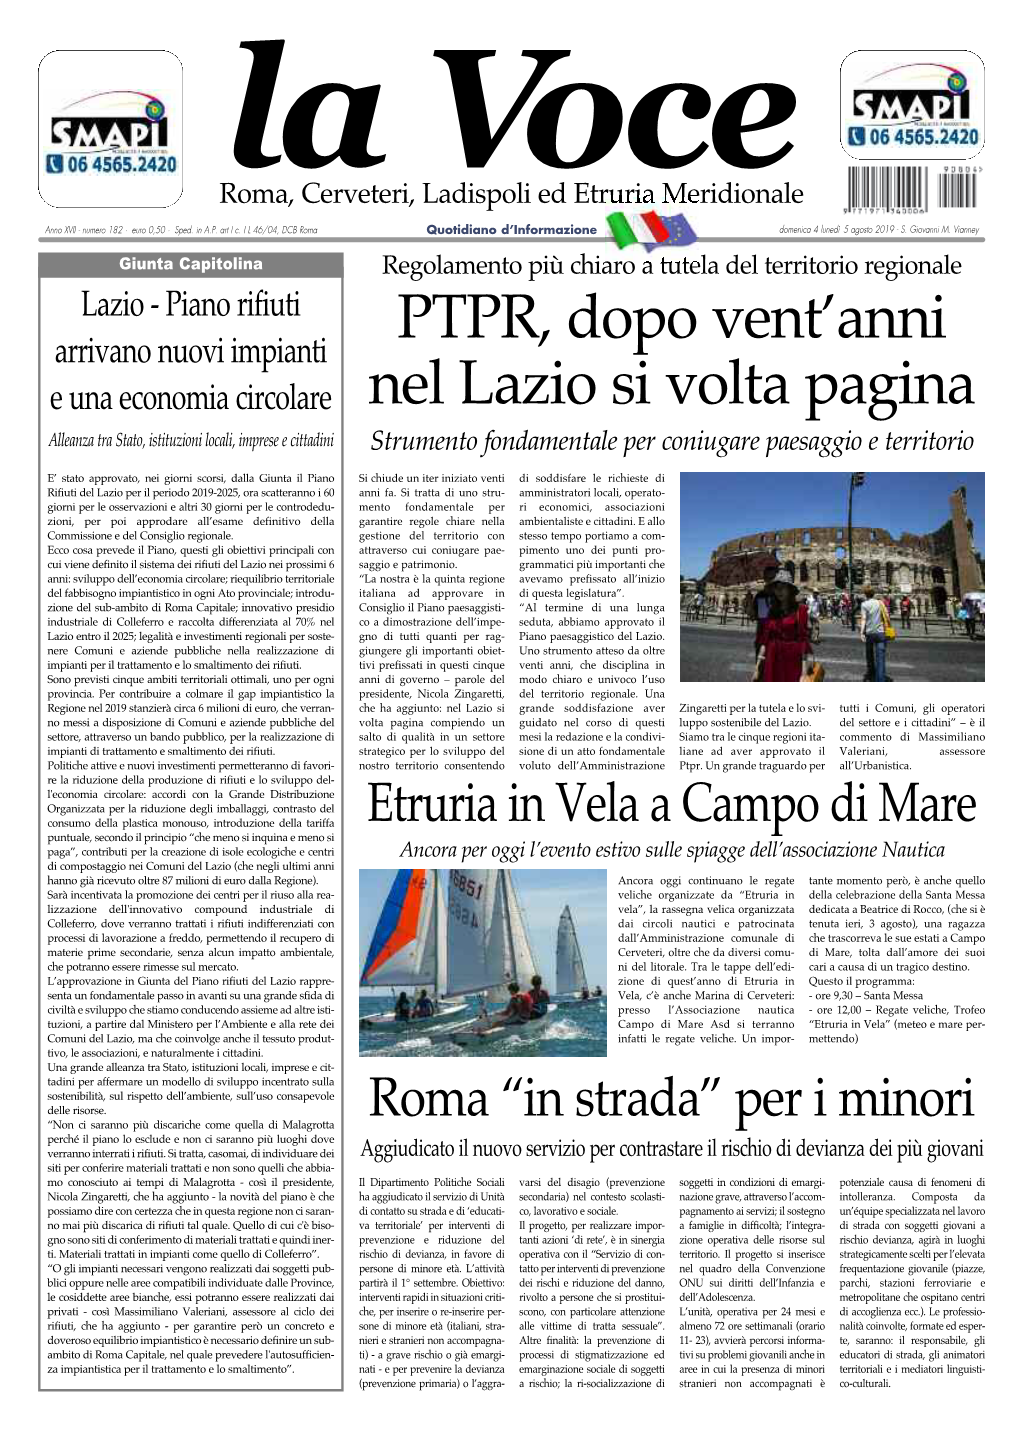 PTPR, Dopo Vent'anni Nel Lazio Si Volta Pagina